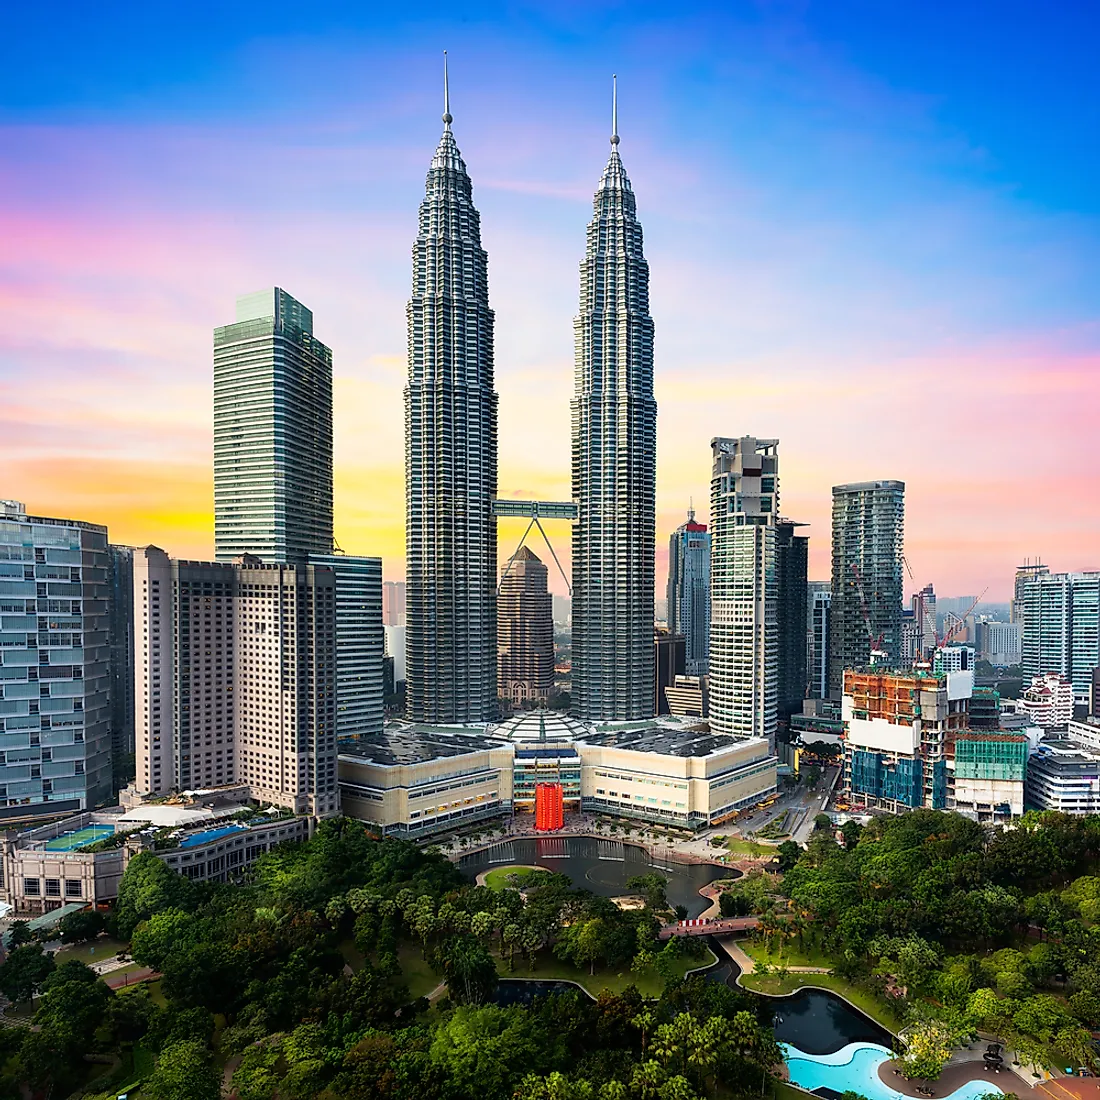 Iconic Petronas Twin Towers In Kuala Lumpur